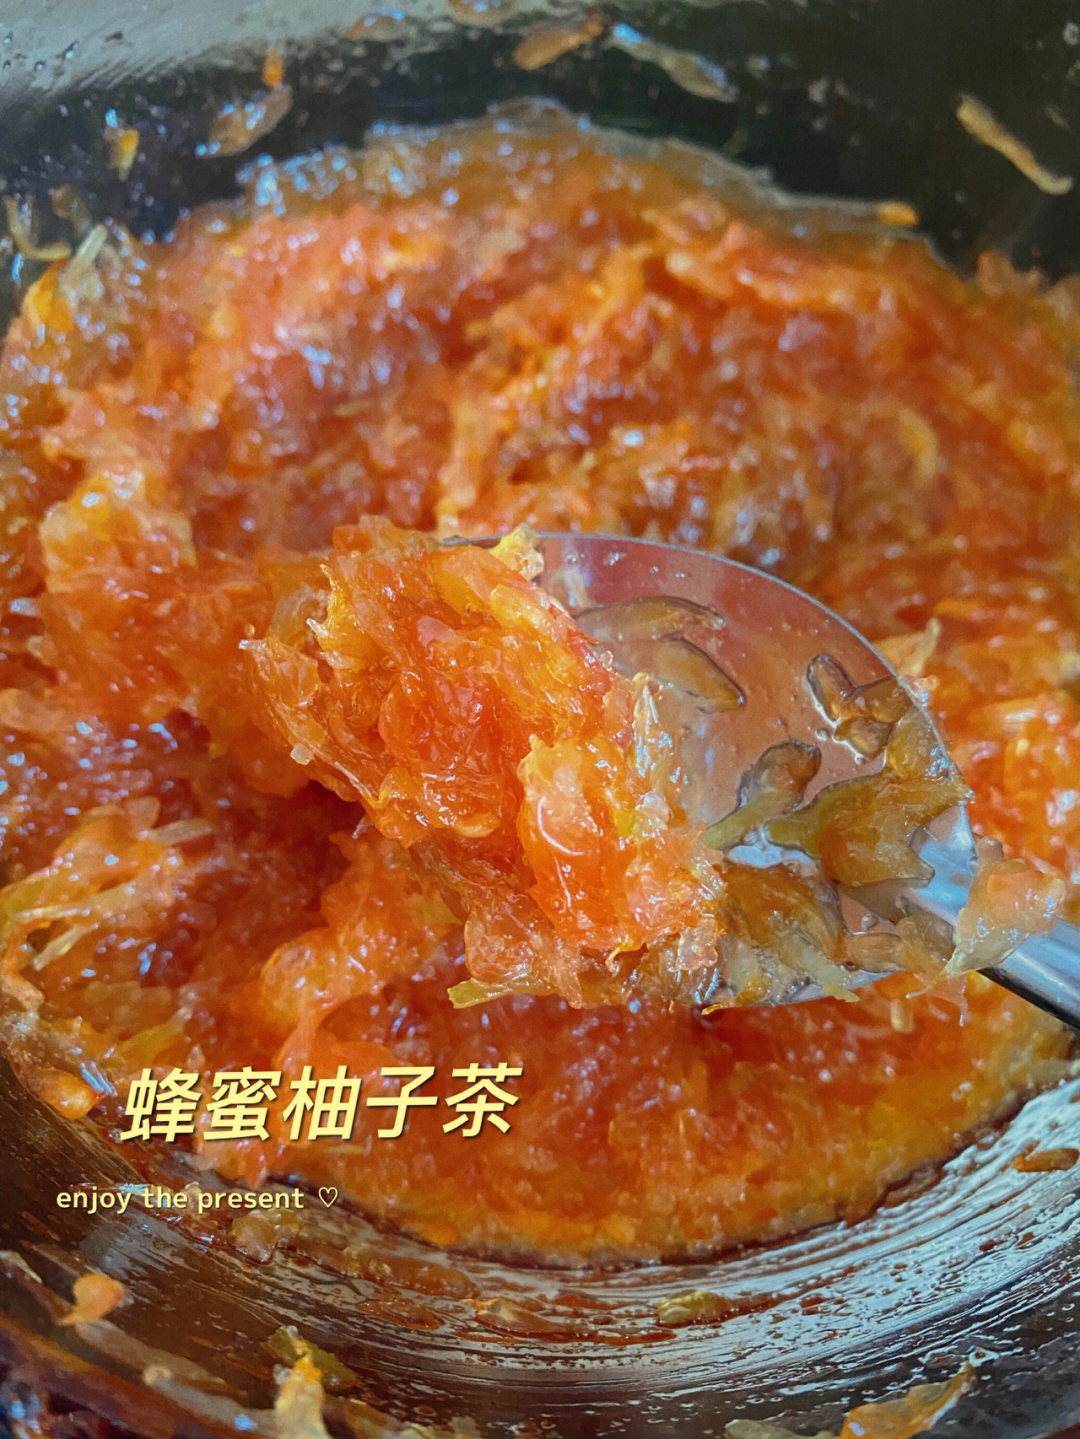 蜂蜜柚子酱性温还是性寒_蜂蜜柚子酱可以做什么_自制蜂蜜柚子酱可以存放多久